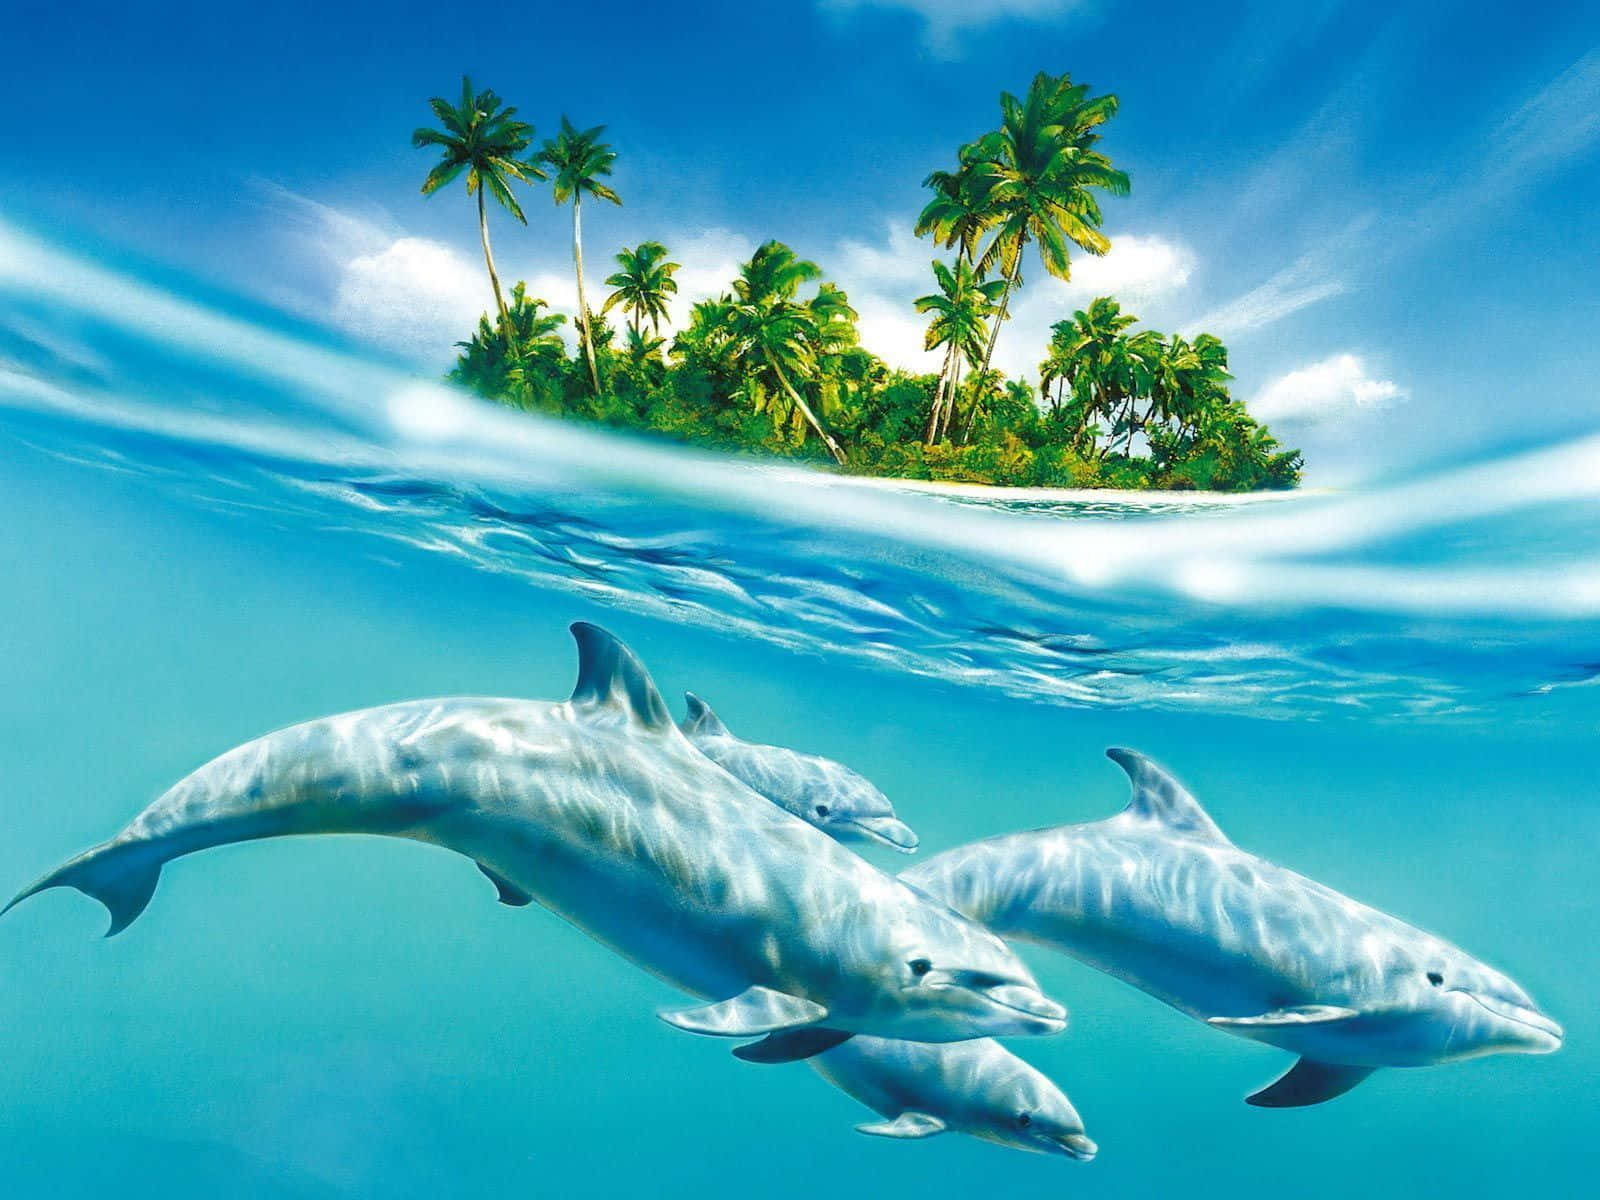 Njutav Den Friska Brisen Med En Magisk Hoppande Delfin Som Bakgrundsbild! Wallpaper